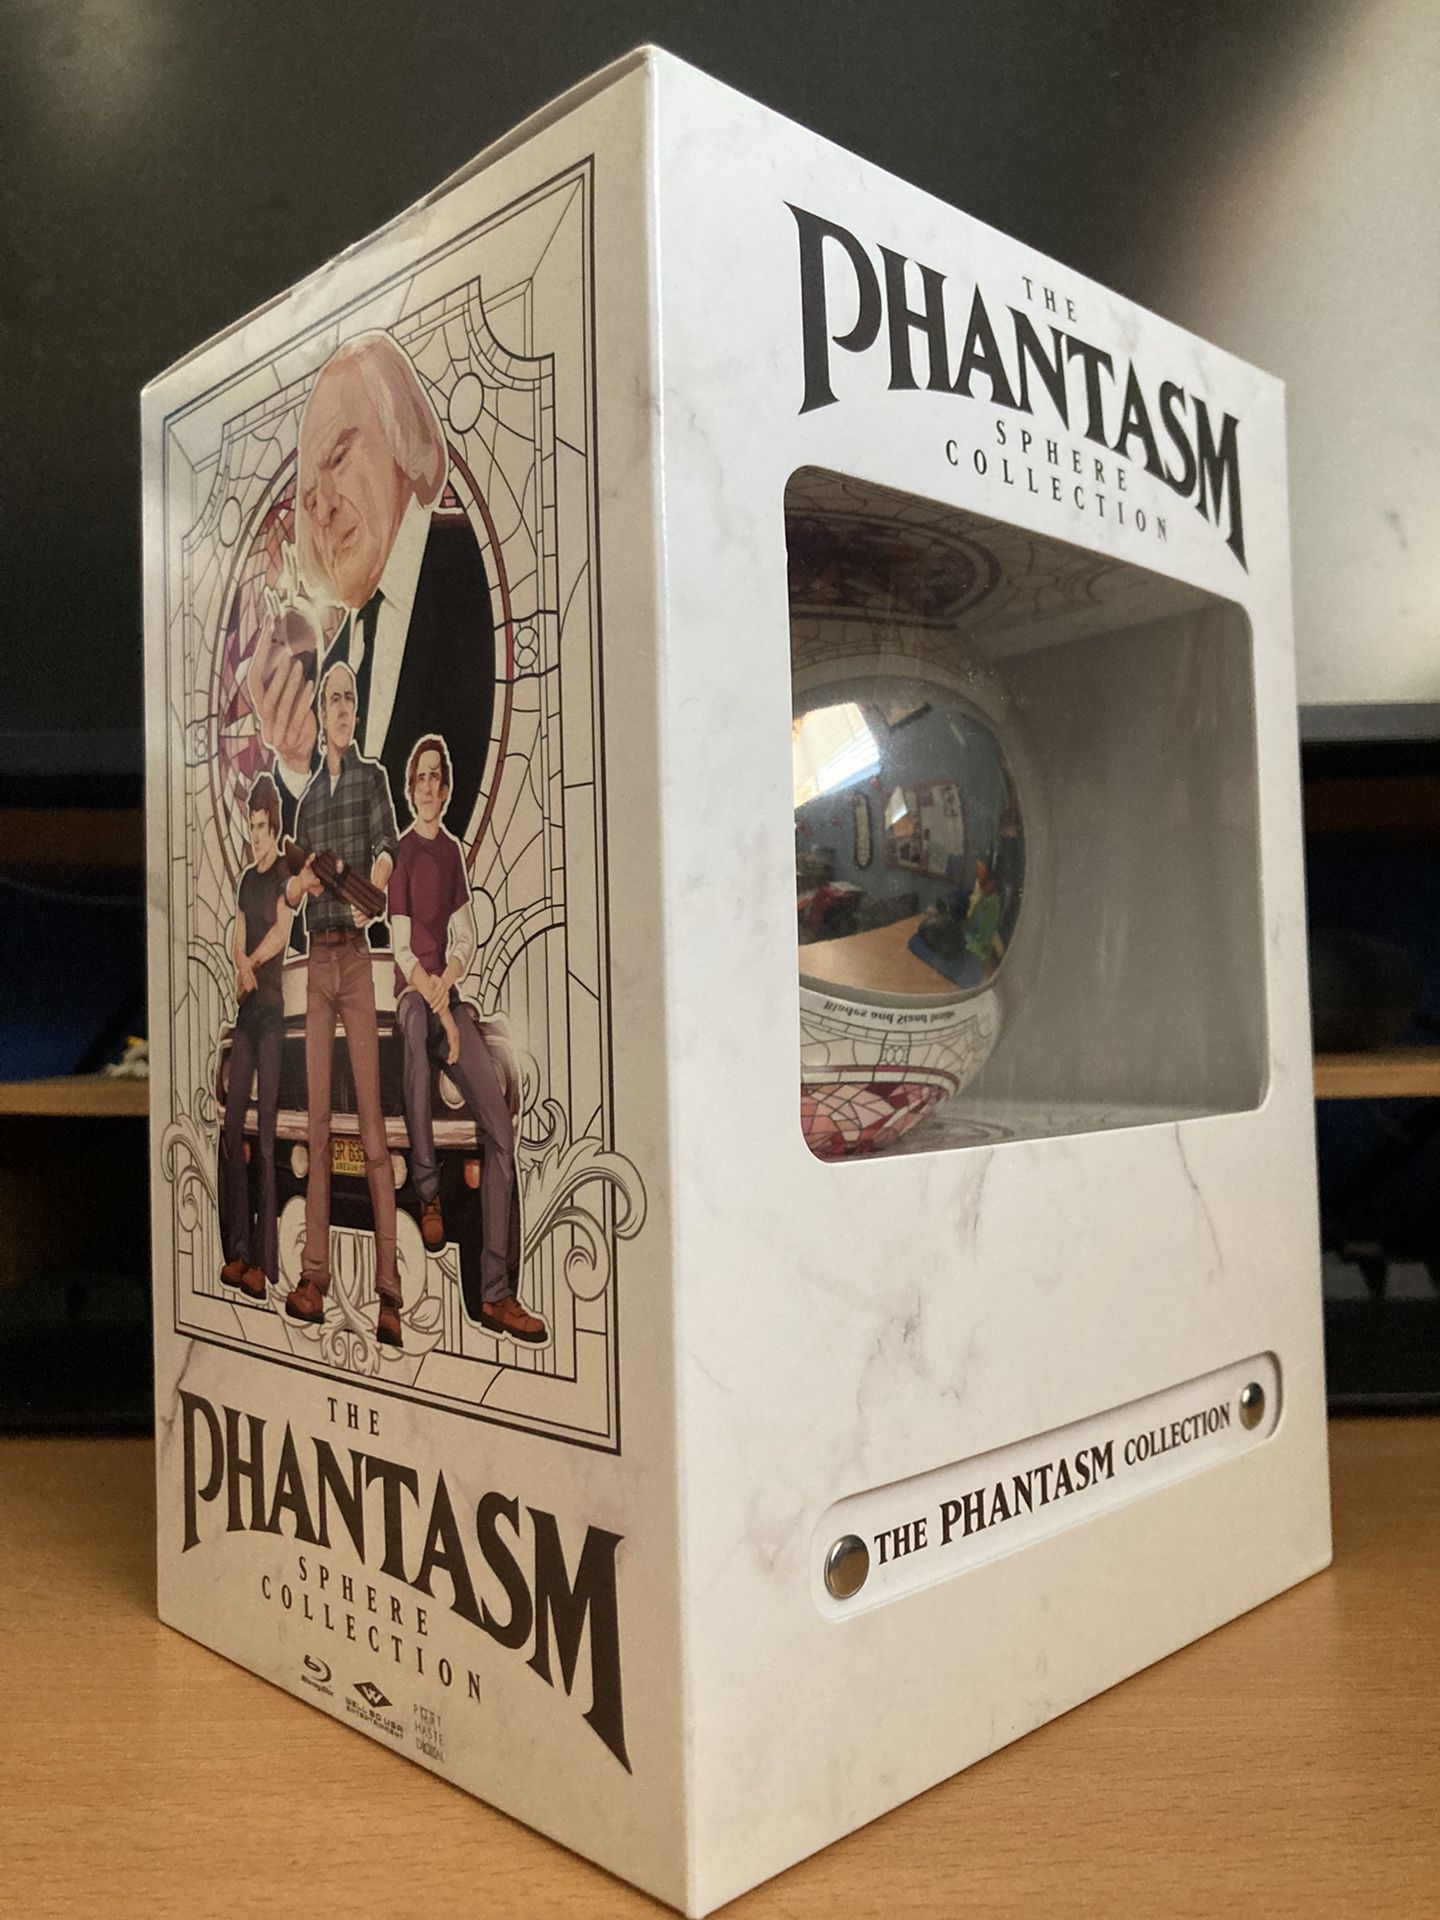 The Phantasm 4k Bluray Collection